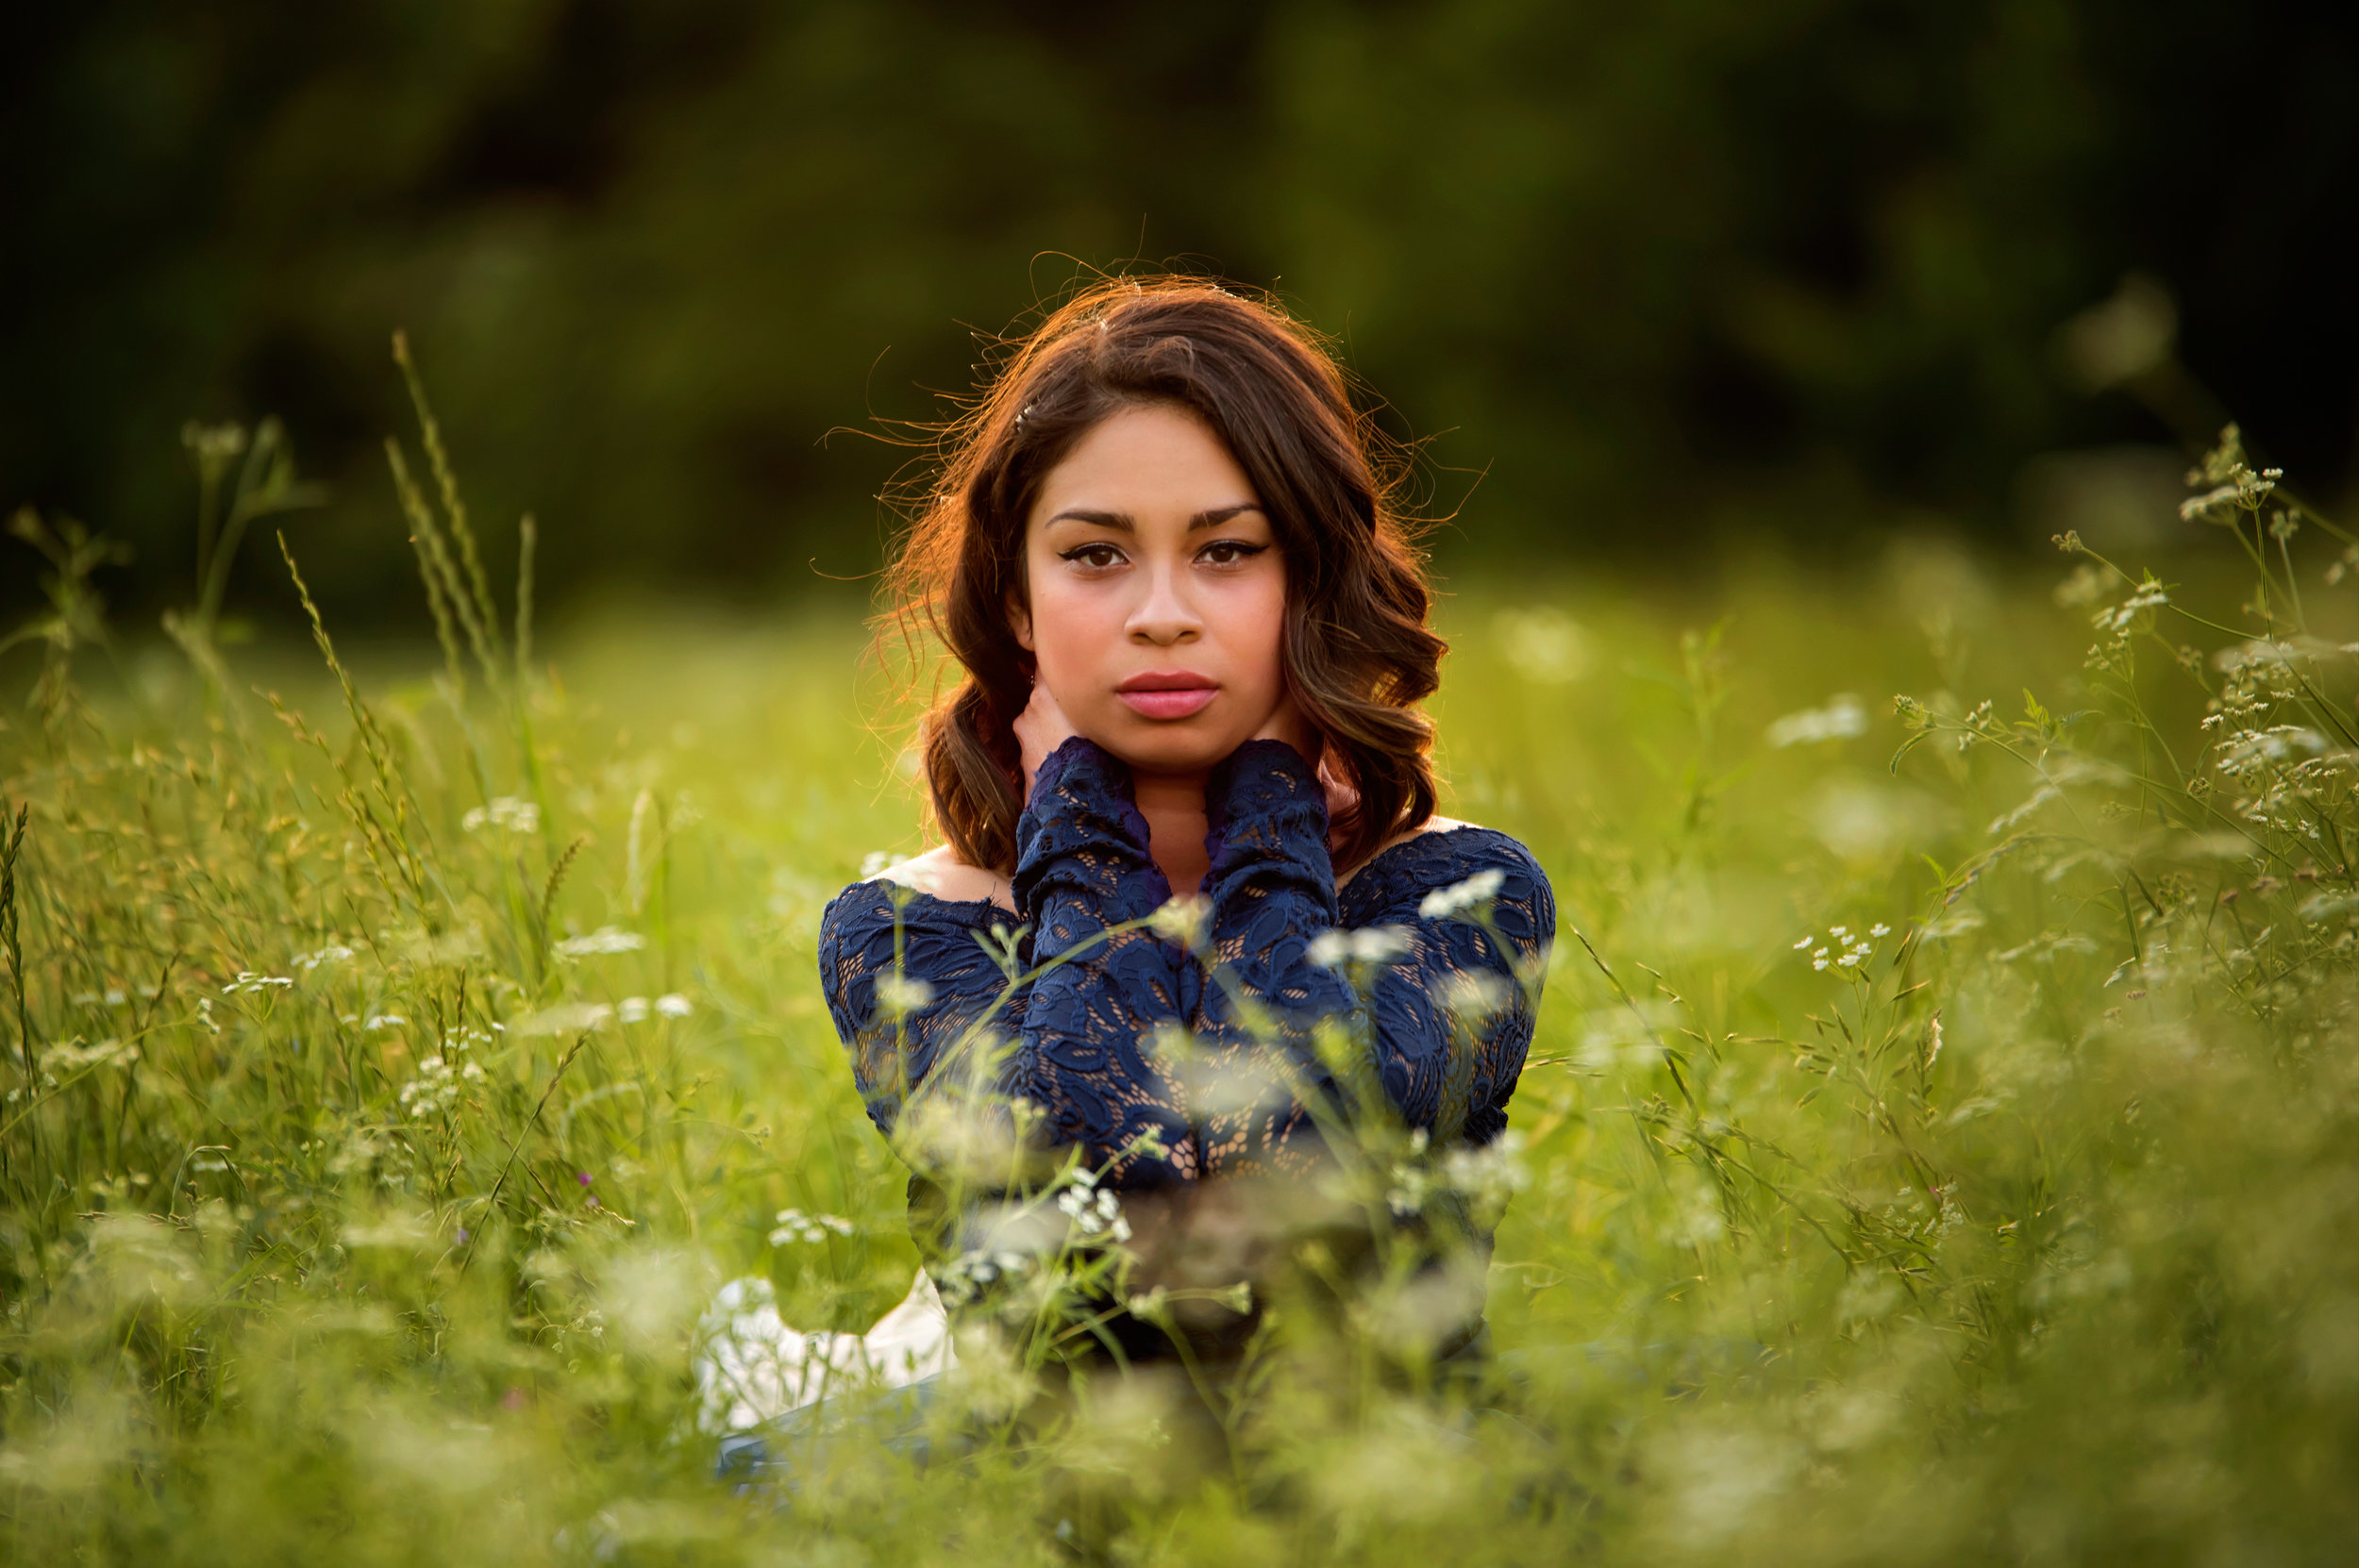  Senior portrait, girls in field of high grass wearing a jean jacket. 